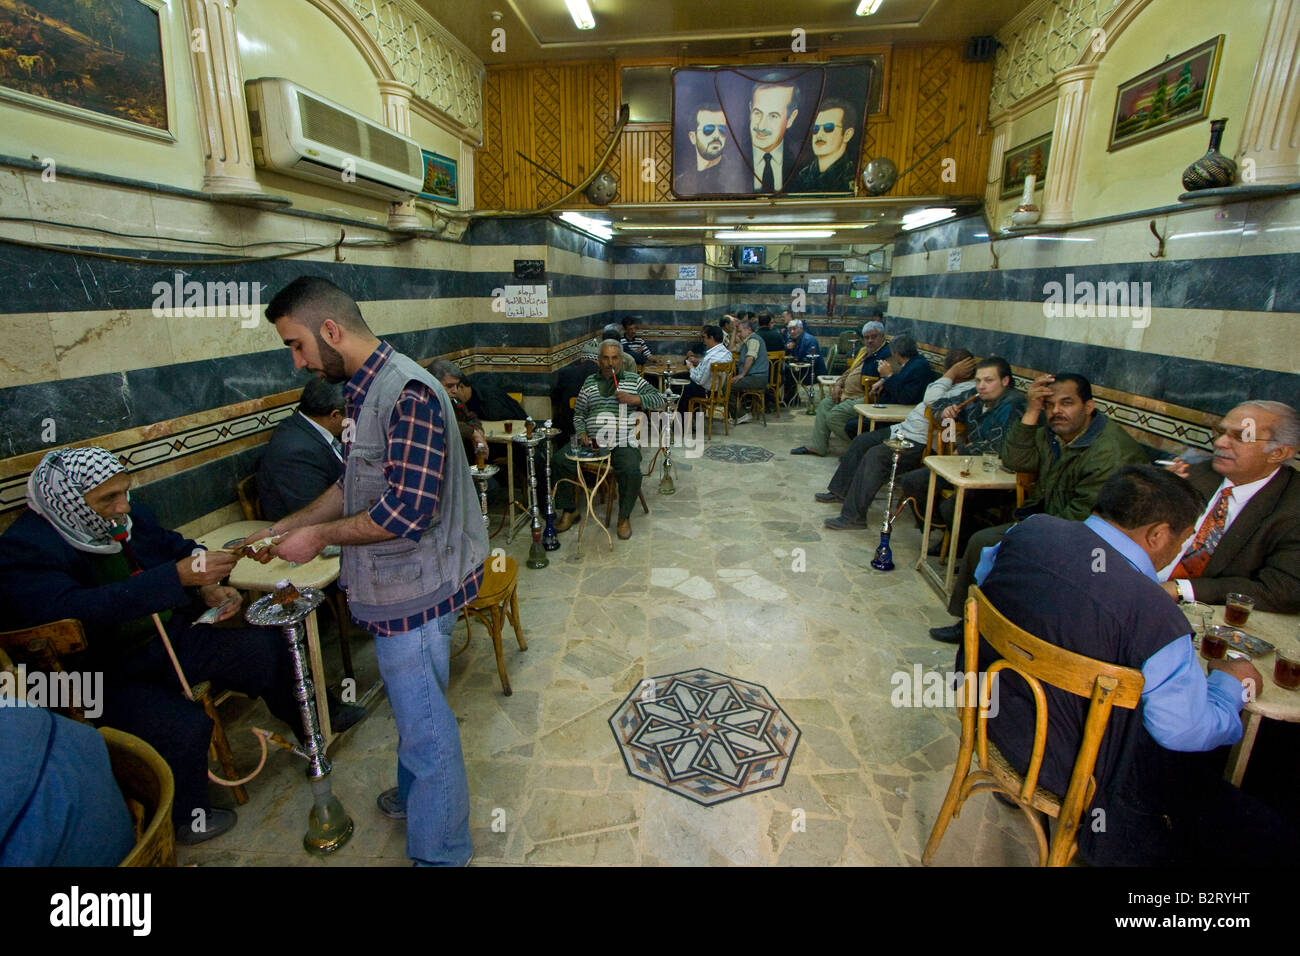 Teahouse in Damascus Syria Stock Photo